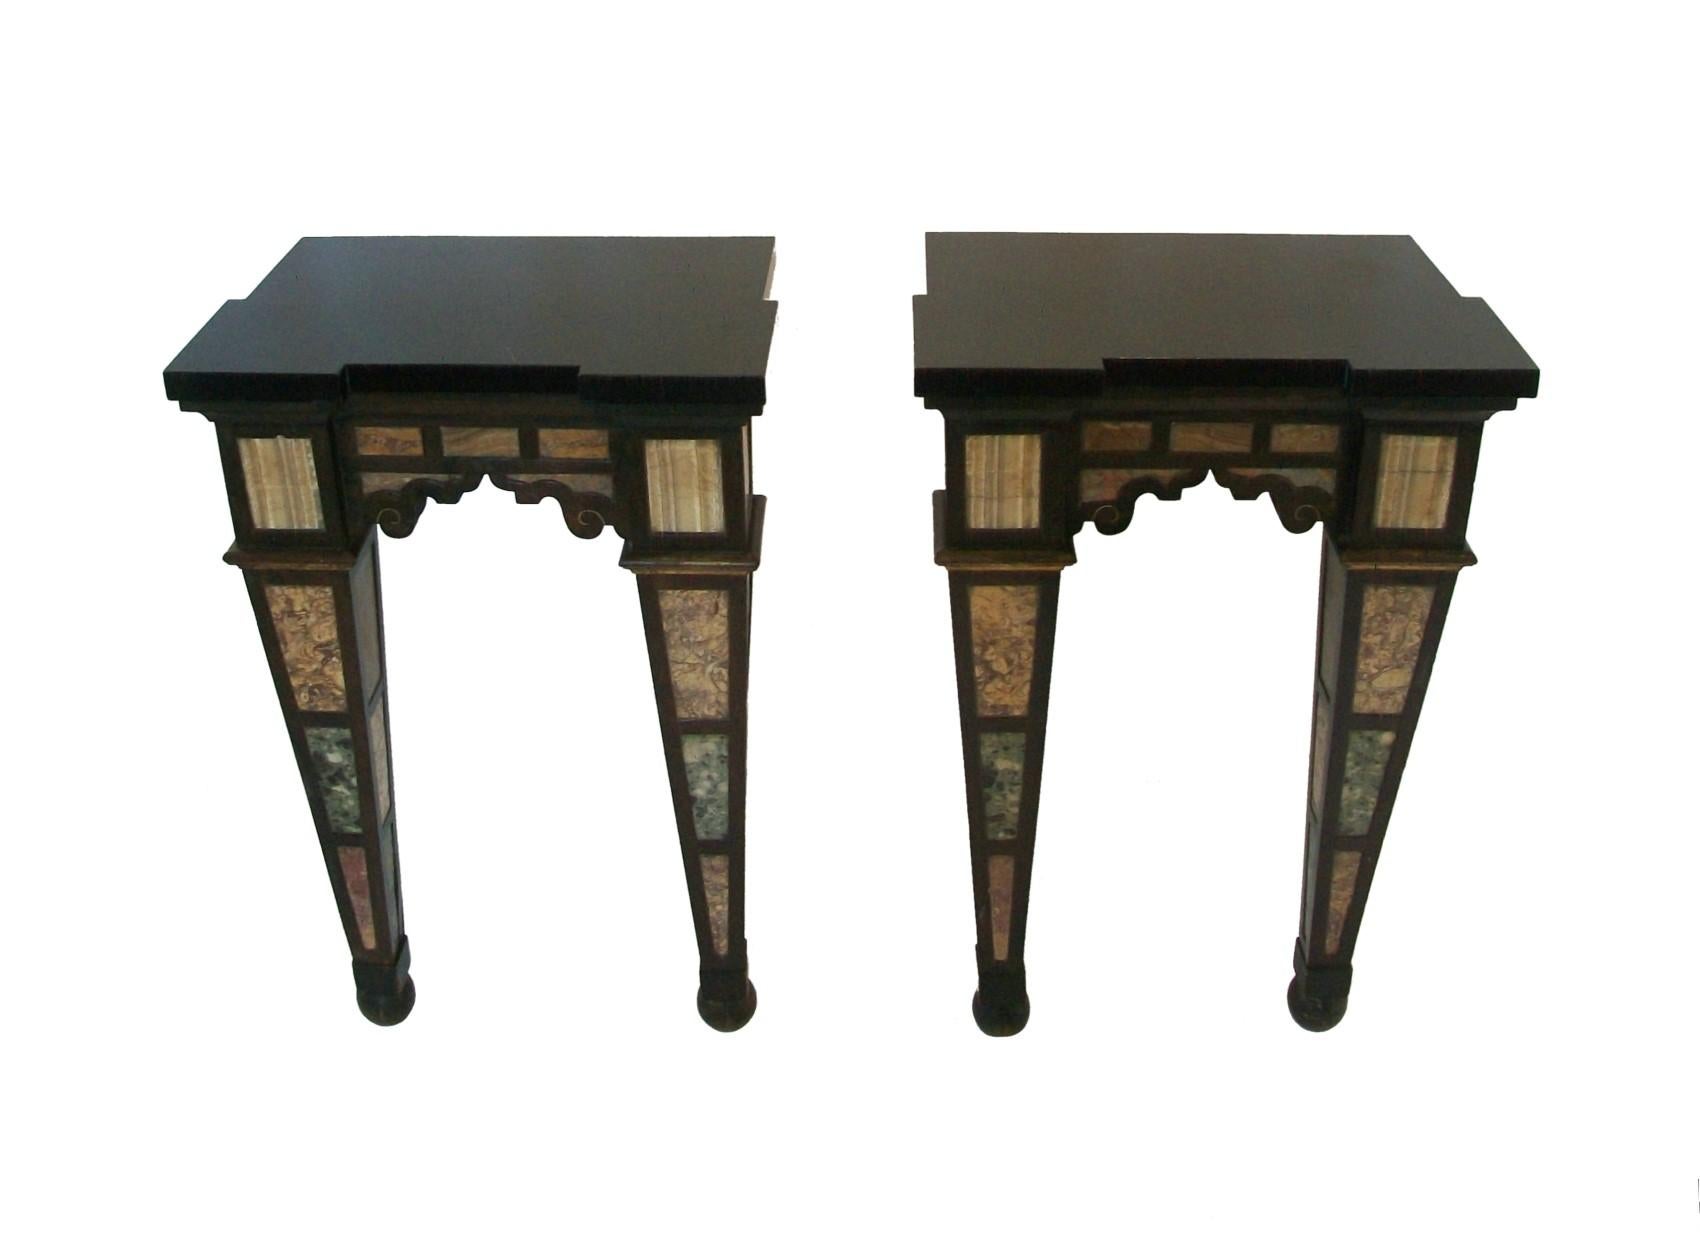 Rare paire de tables consoles anciennes en marbre - présentant une variété de marbres et d'onyx insérés sur tous les côtés dans un cadre en bois dur estampé - chaque pied est un obélisque inversé se terminant par un pied sphérique, les quatre côtés